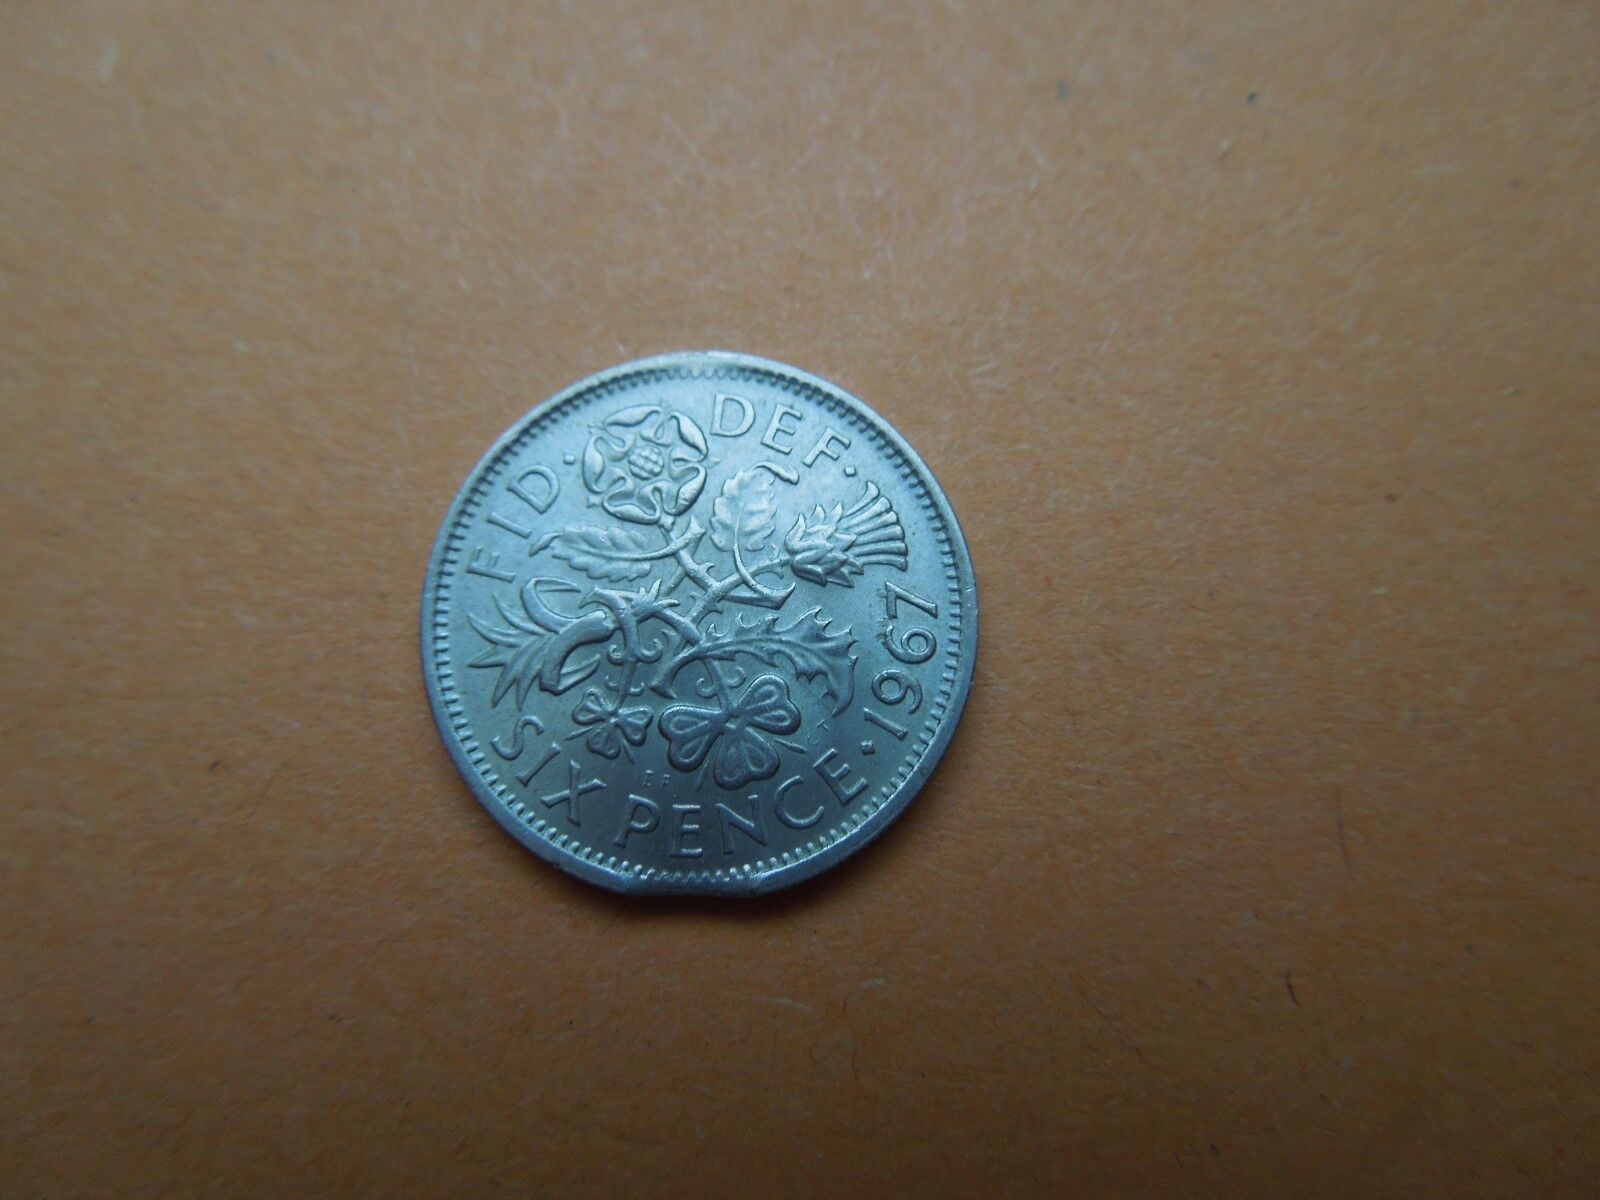 N304 Uk  Coin  Error  Clipped  1967  Au  See Descrip